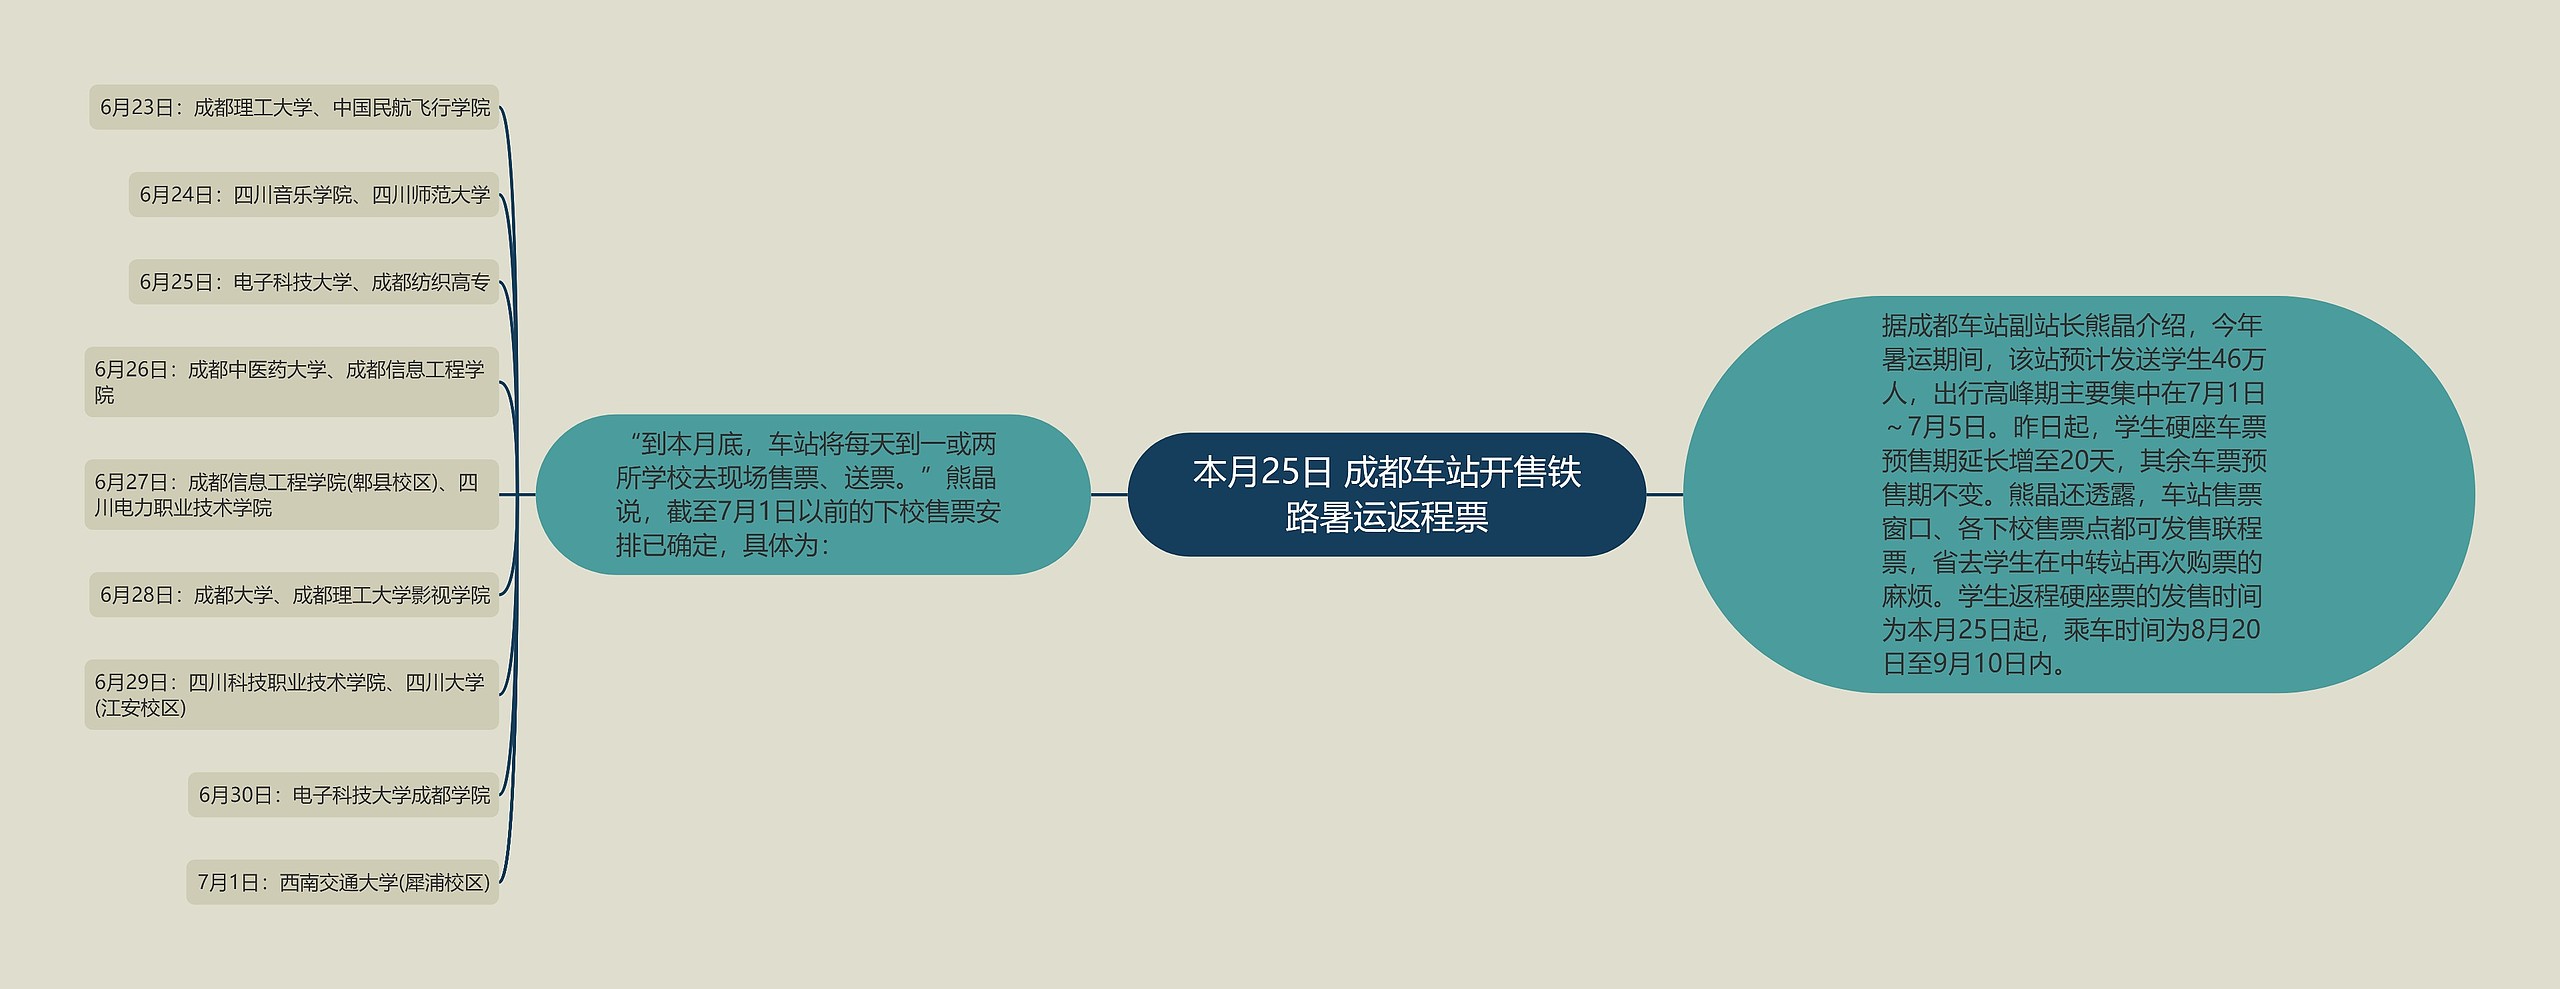 本月25日 成都车站开售铁路暑运返程票思维导图